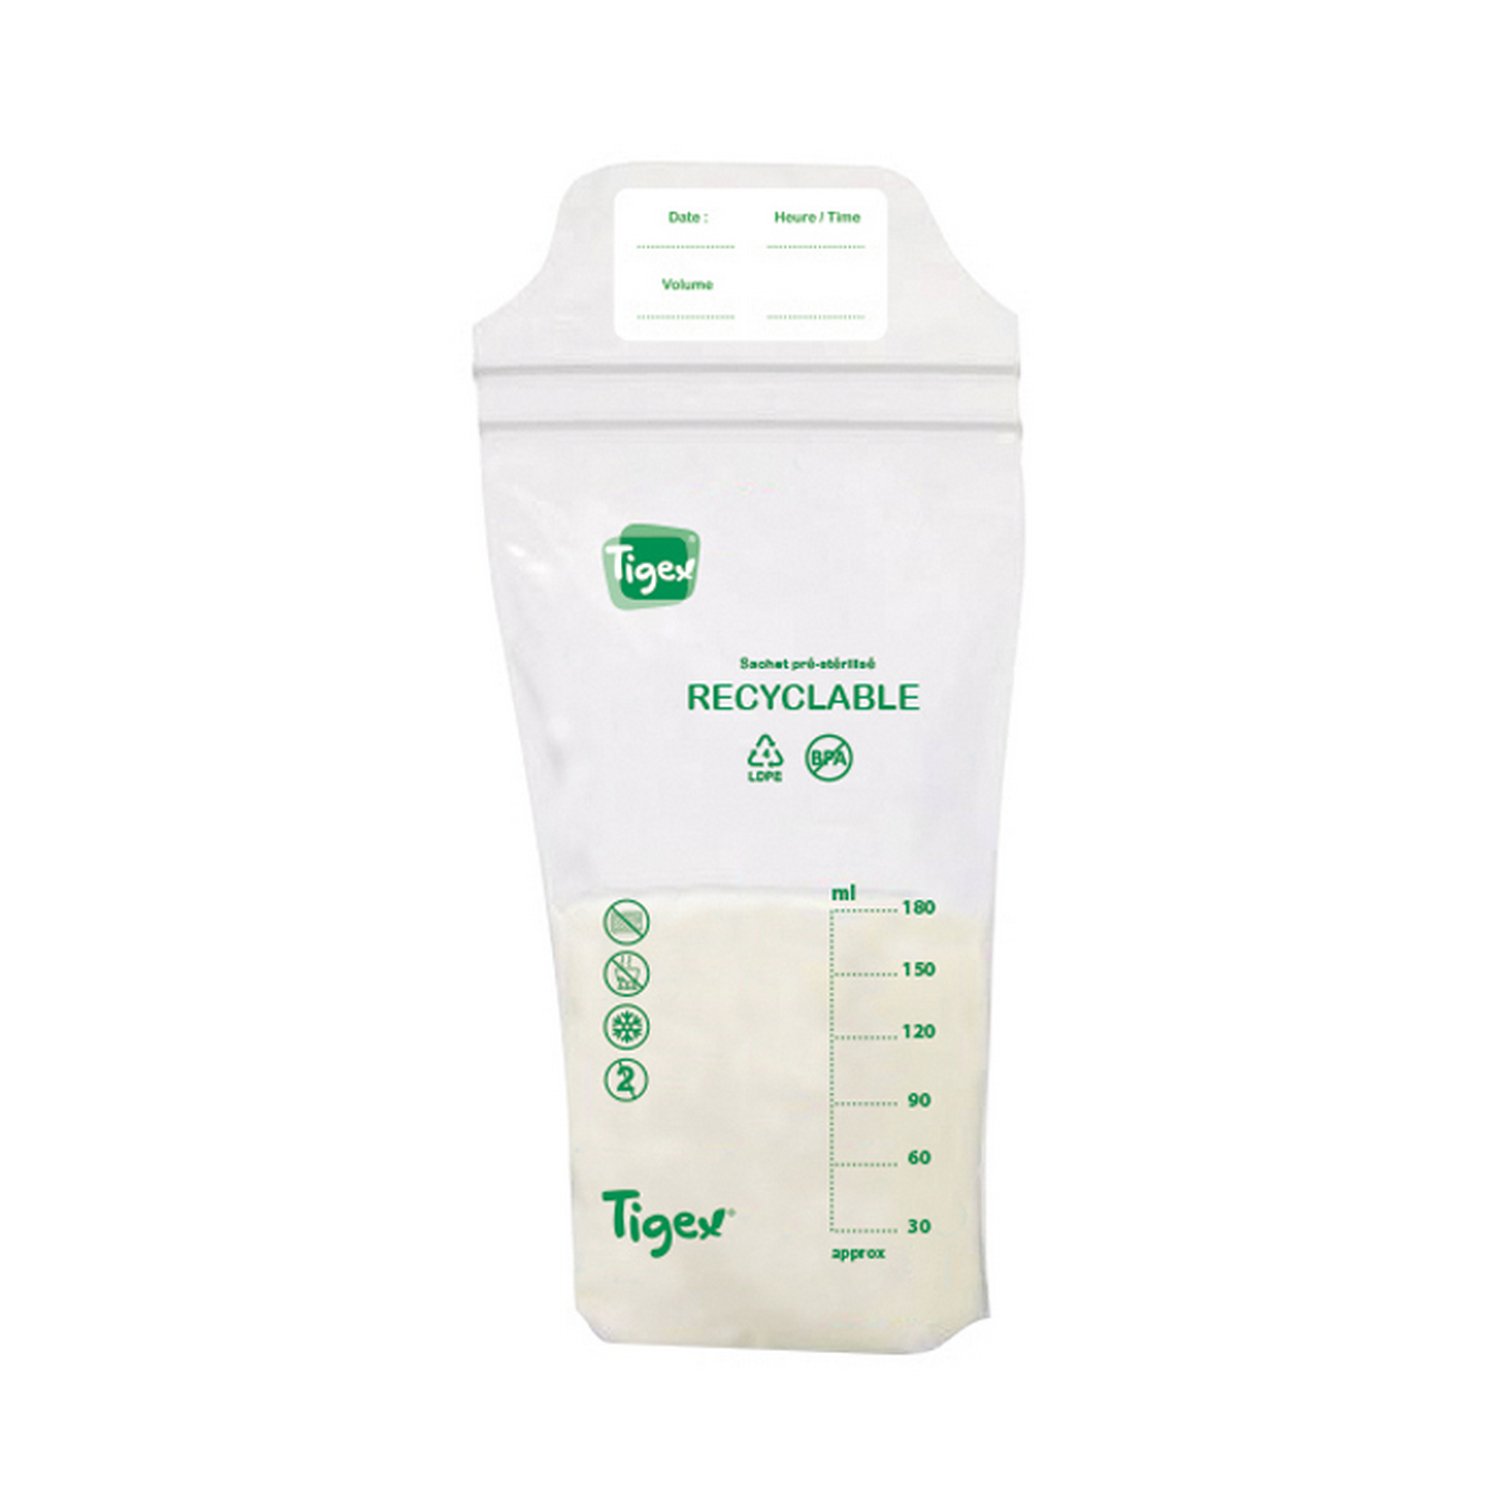 25 sachets de conservation lait maternel de Nuk, Pots de